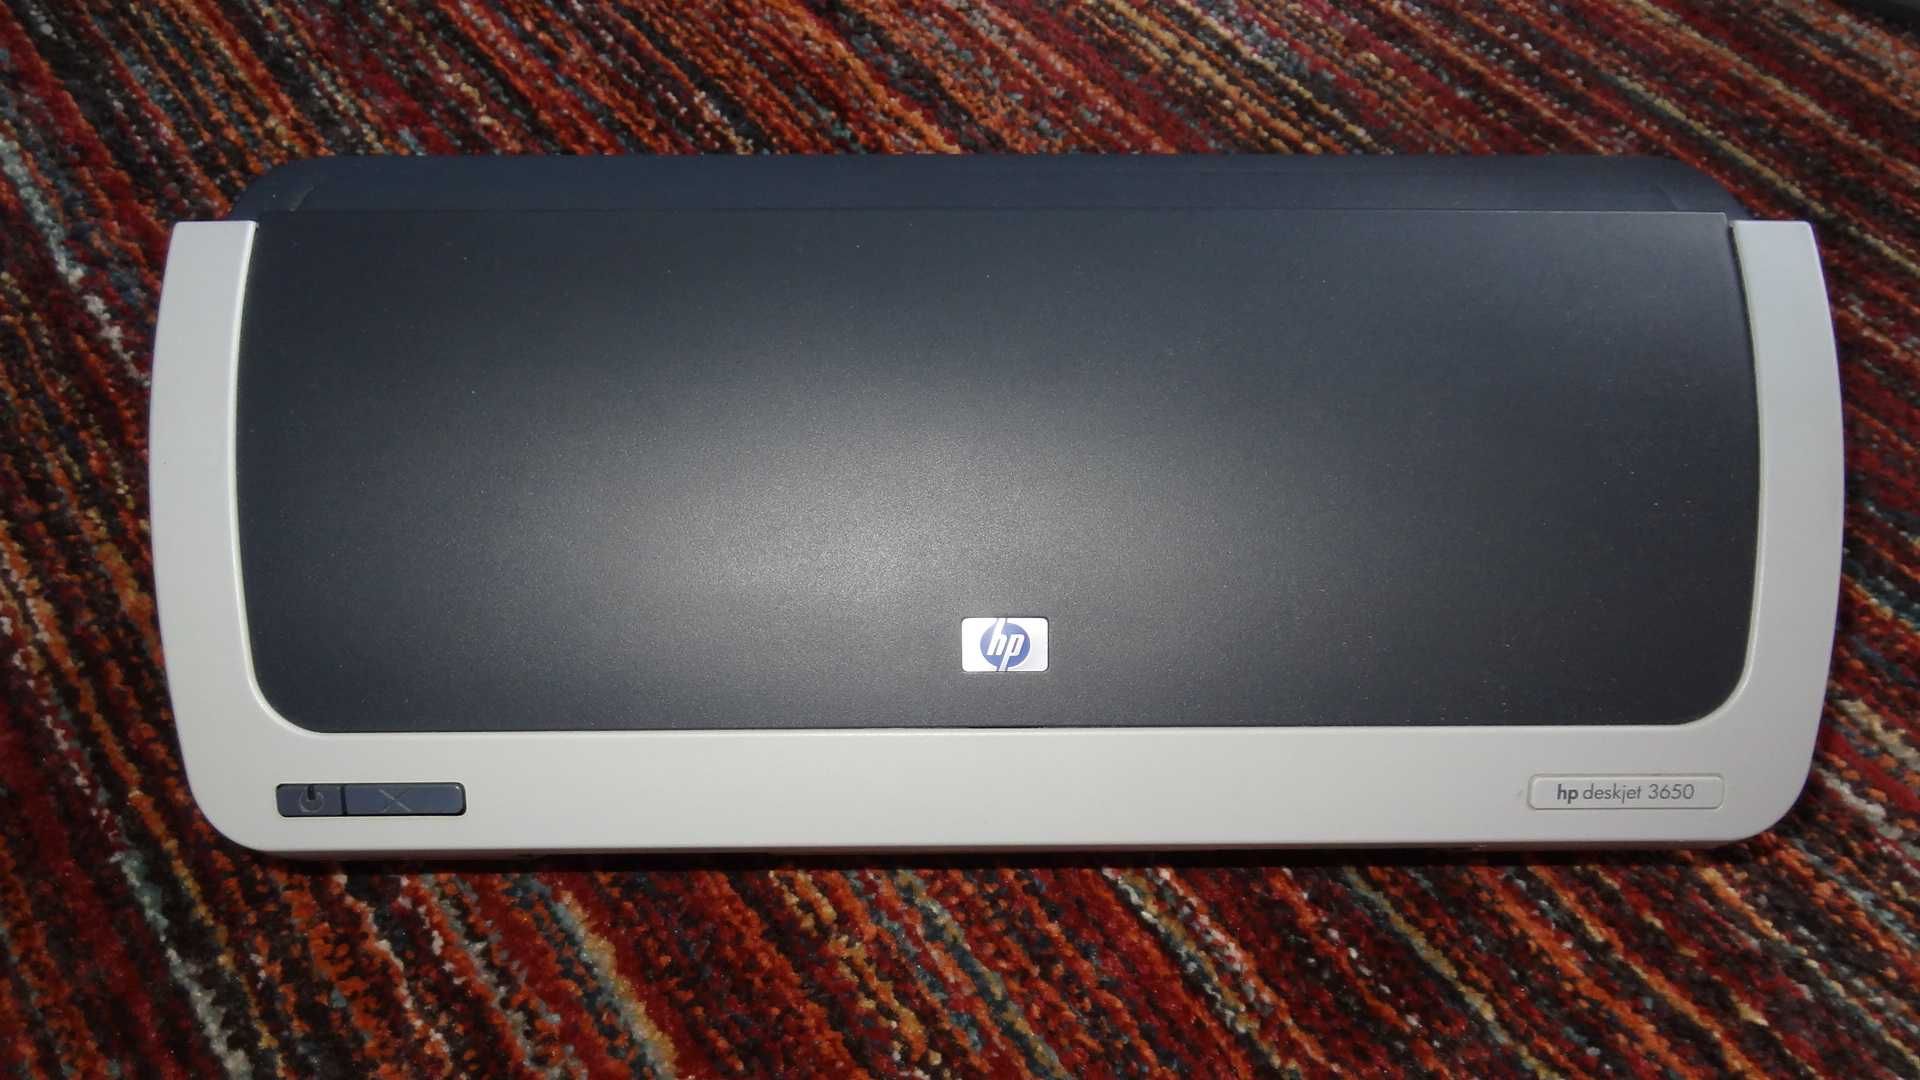 Impressora HP deskjet 3650 - NOVA